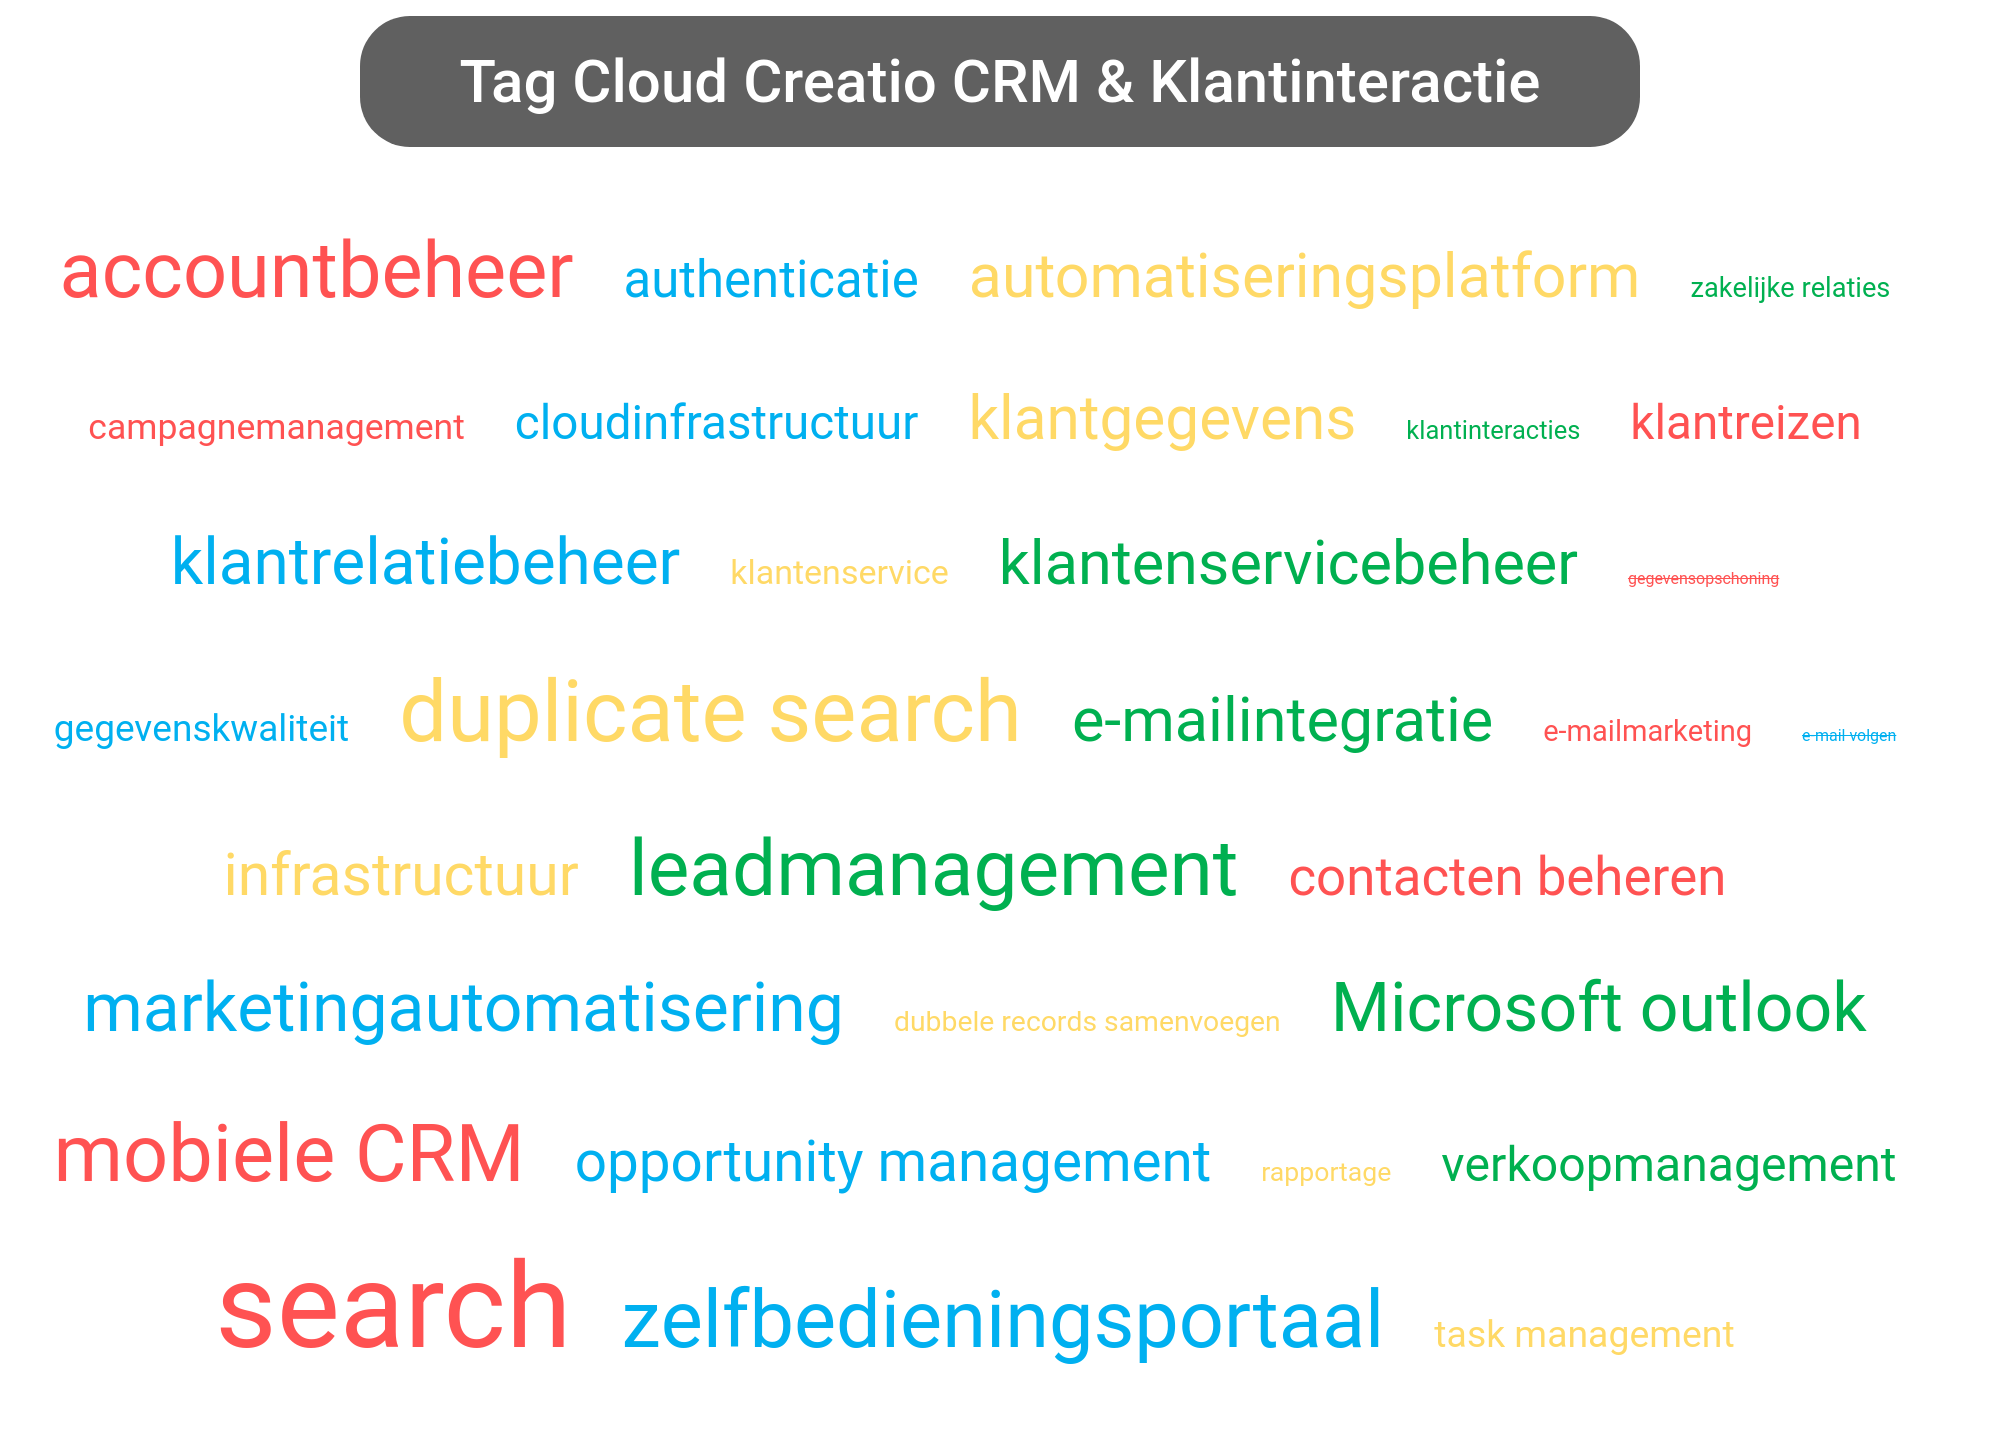 Tag cloud van Creatio CRM tools.